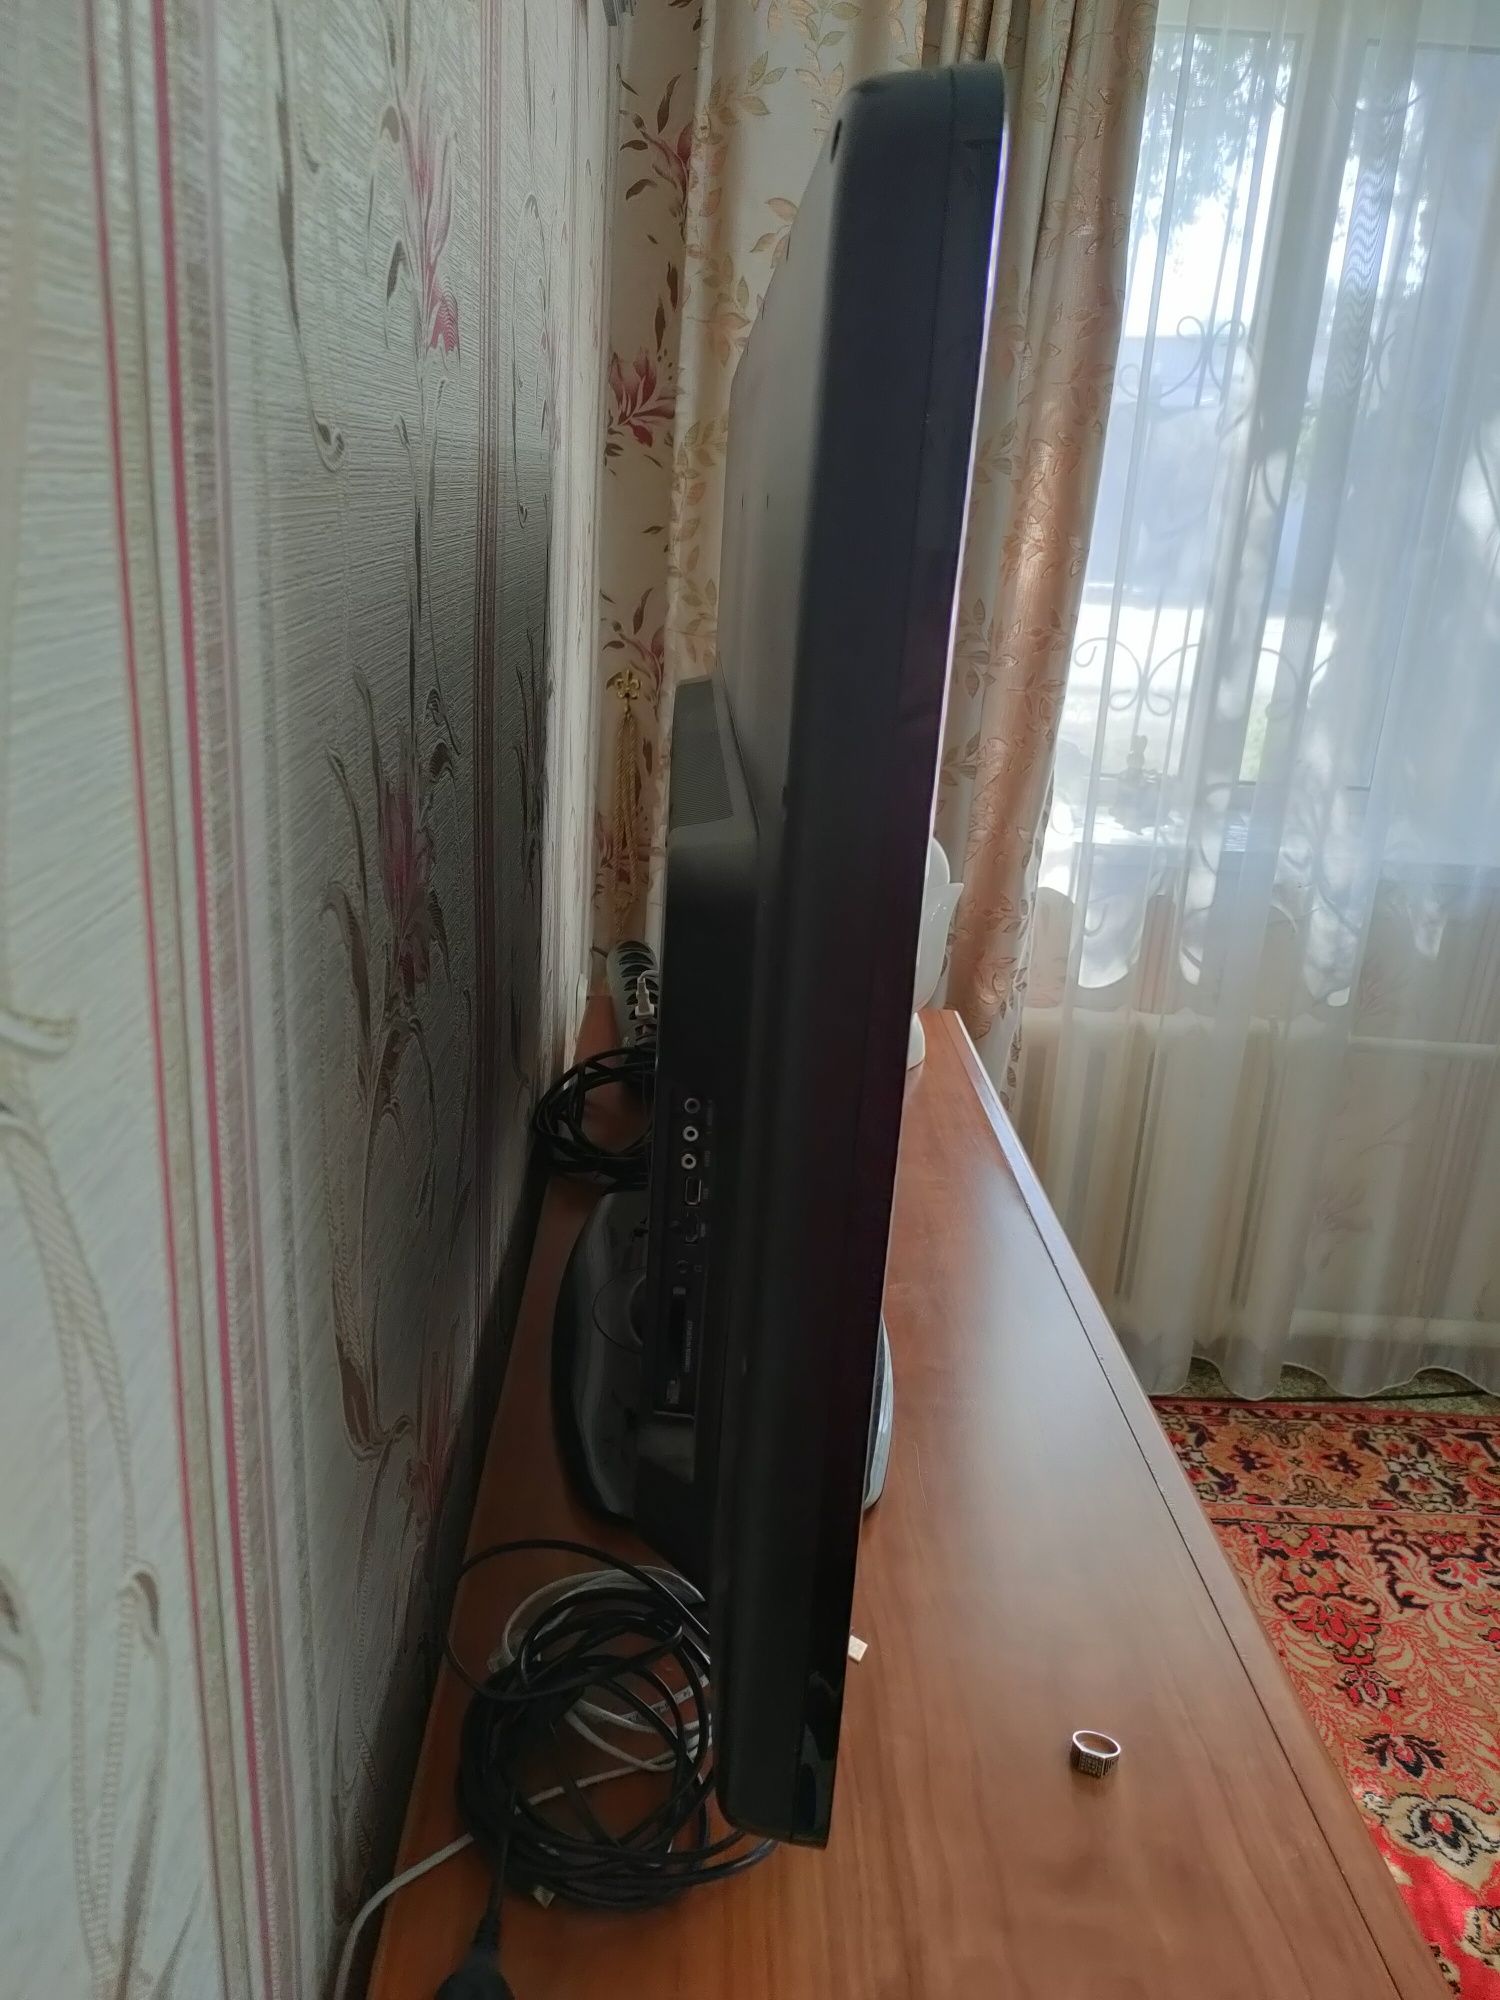 Телевизор большой Philips европейская сборка. Диагональ 110 см.